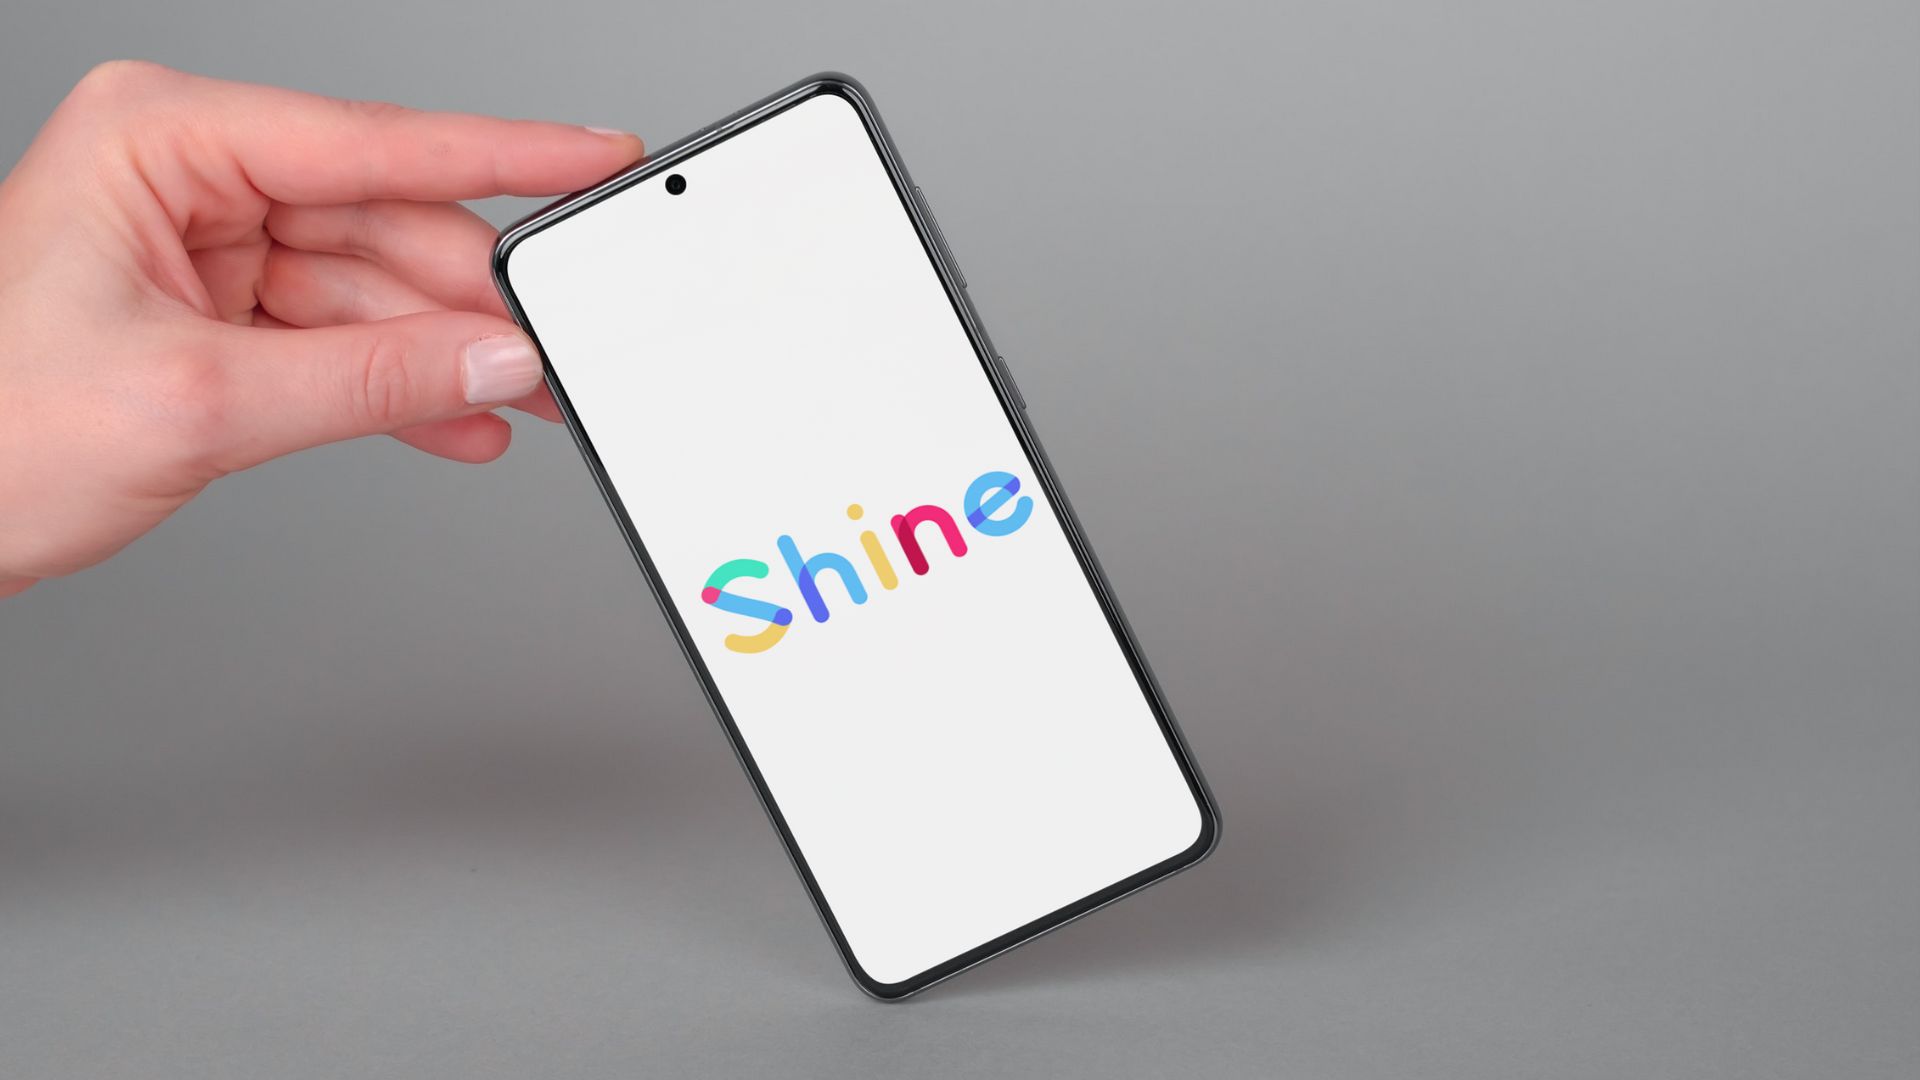 Service client Shine : comment le contacter ?